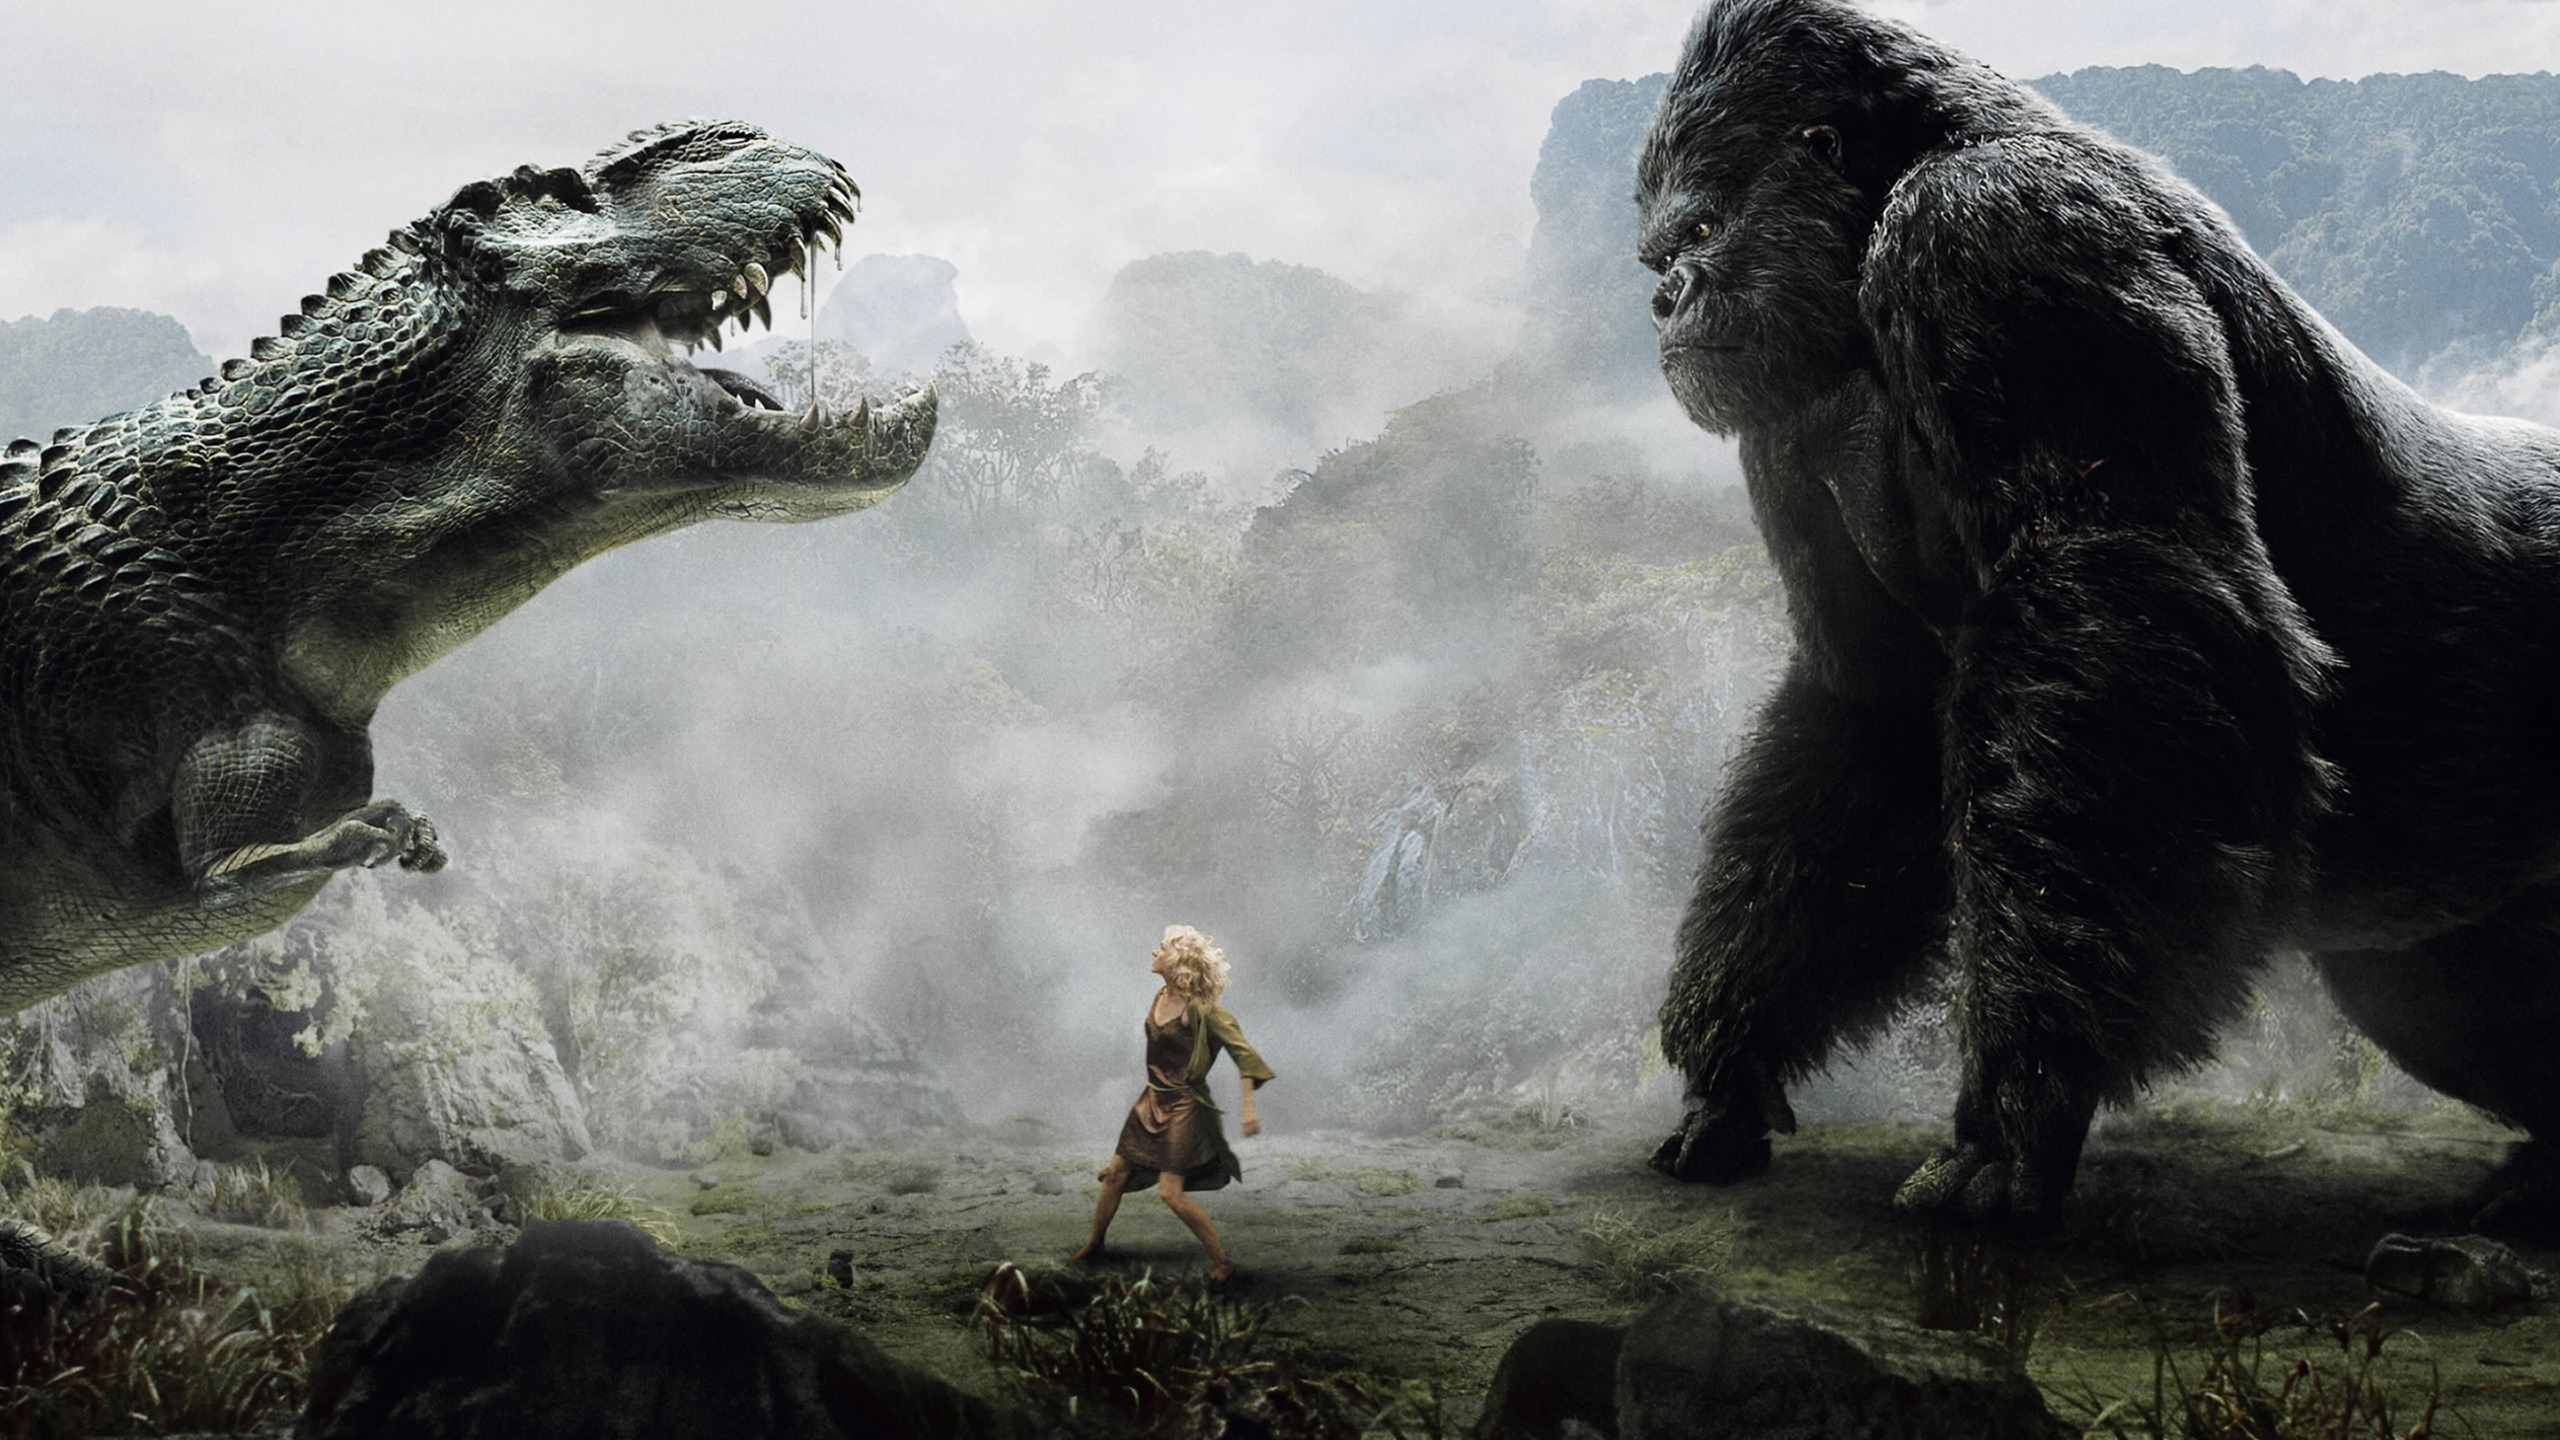 King Kong vs Dinosaur for 2560x1440 HDTV resolution